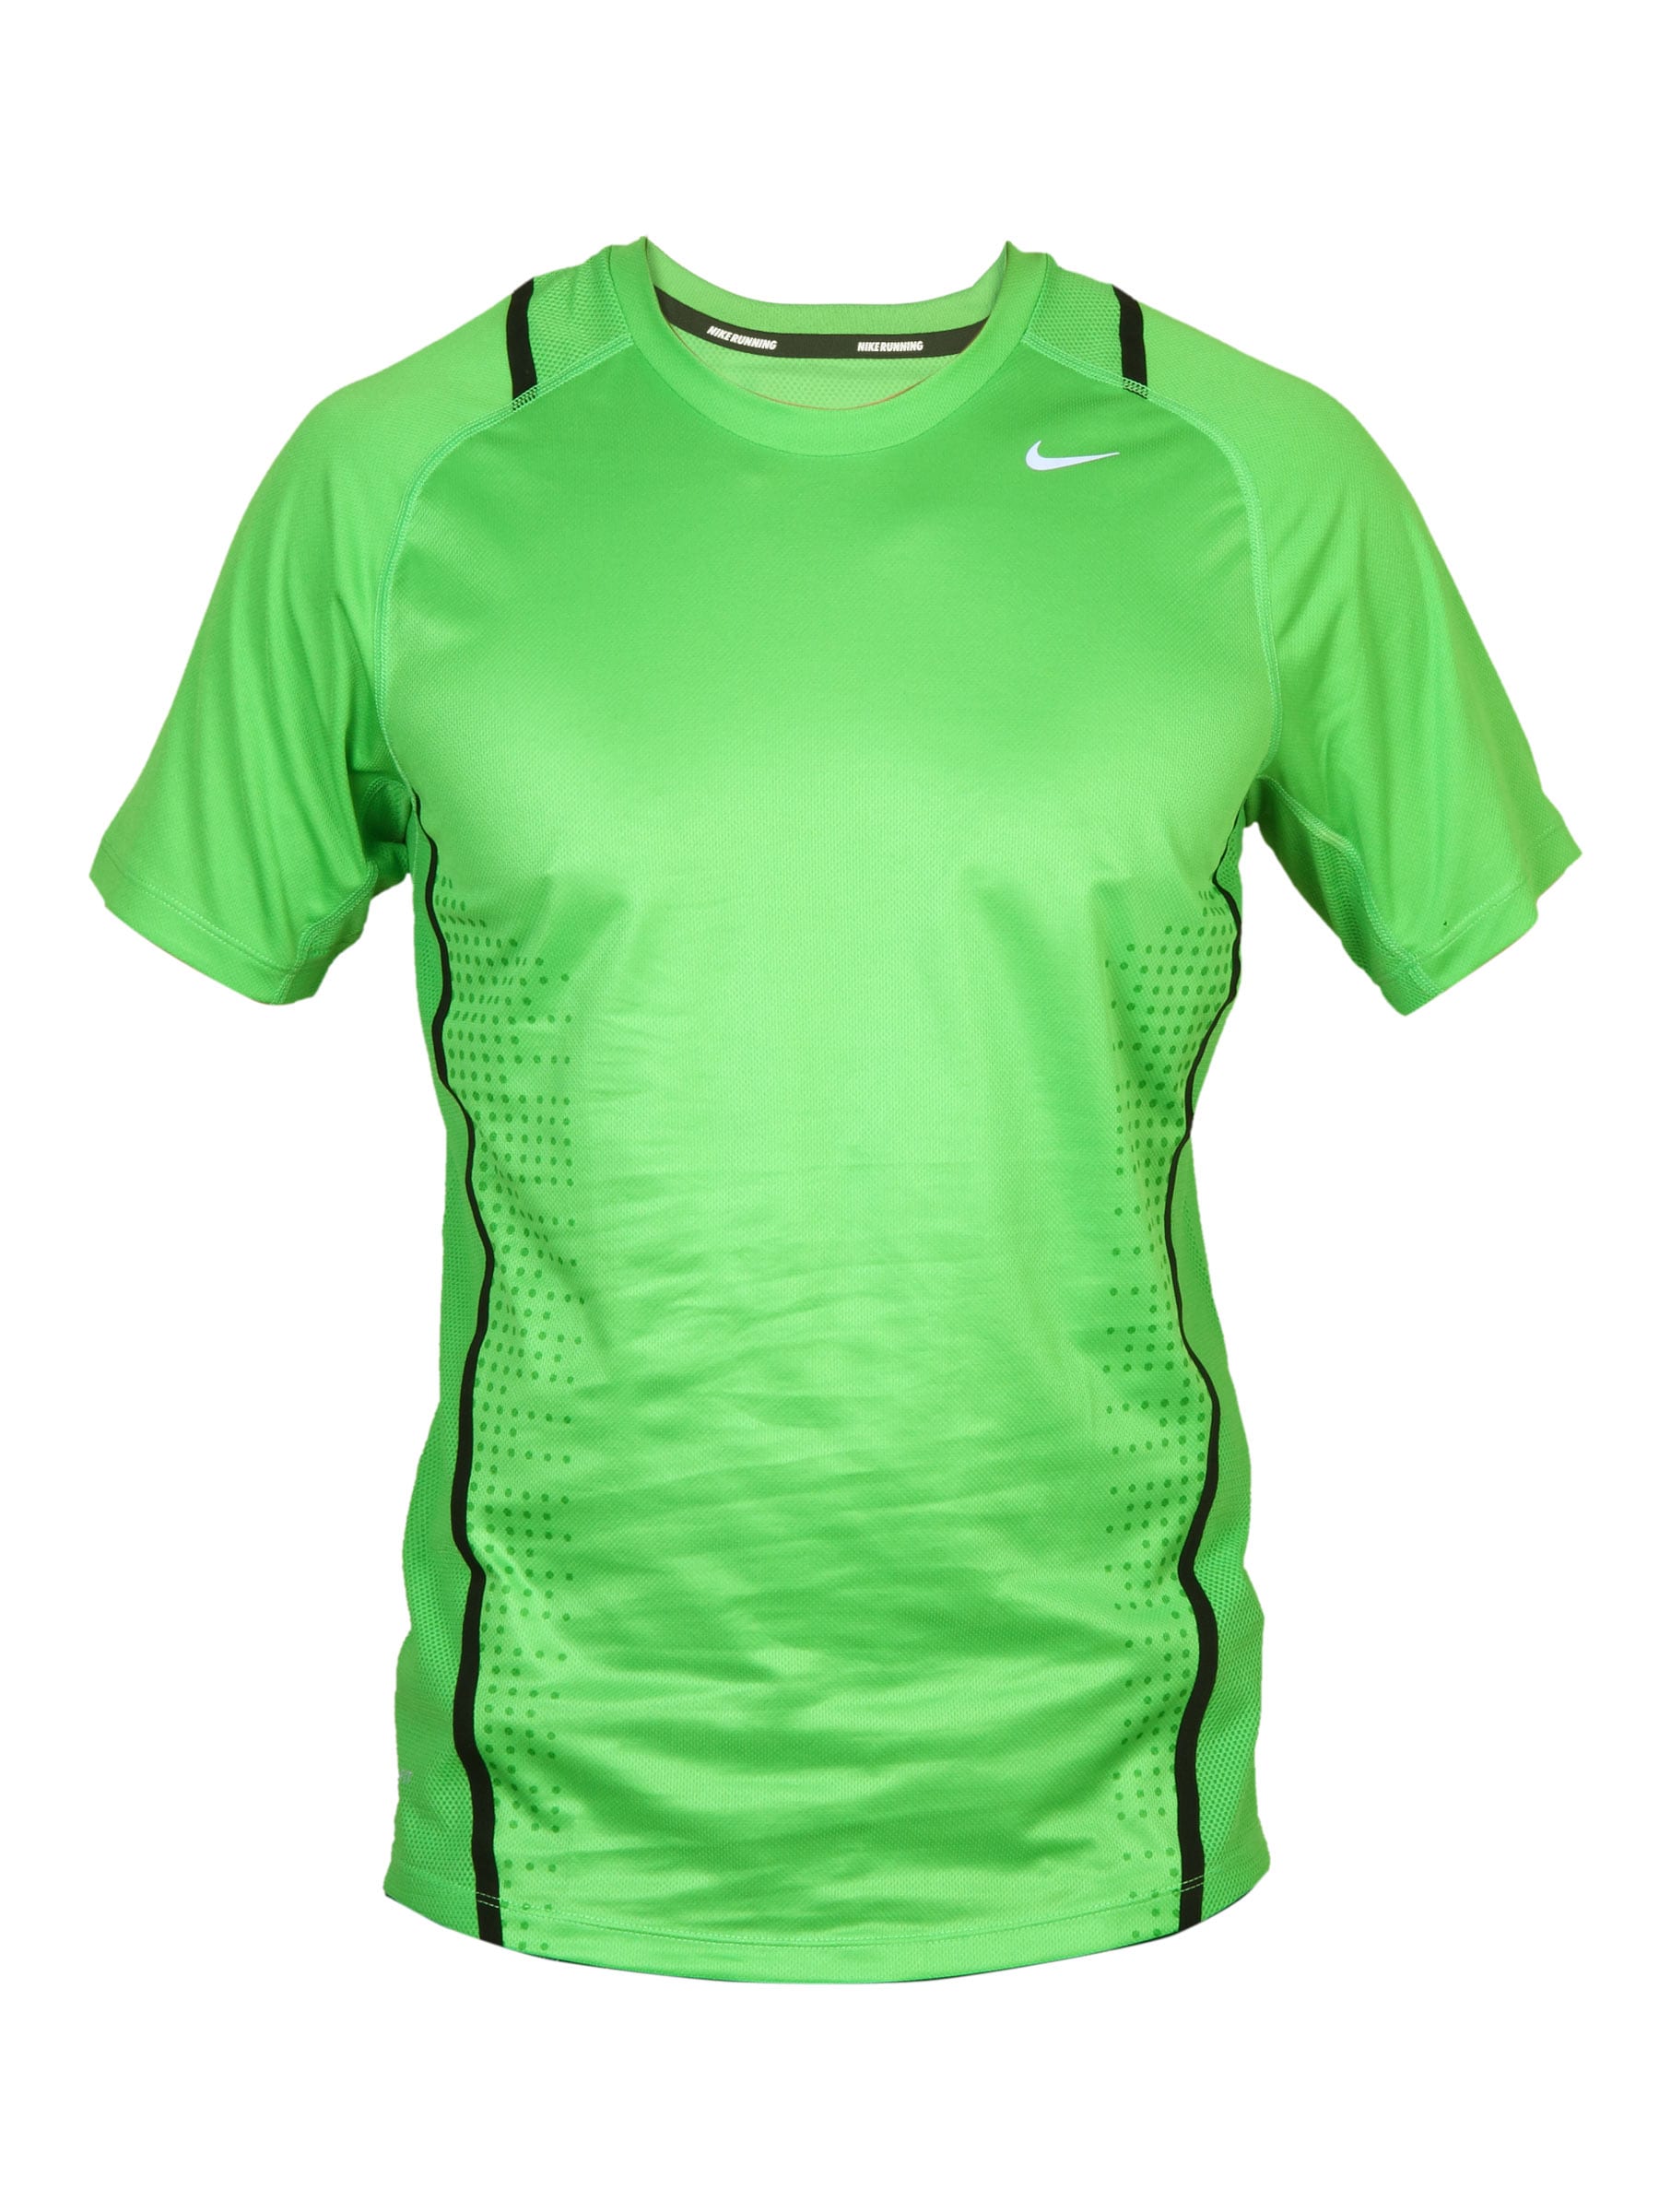 Nike Men's As Race Day Green T-shirt